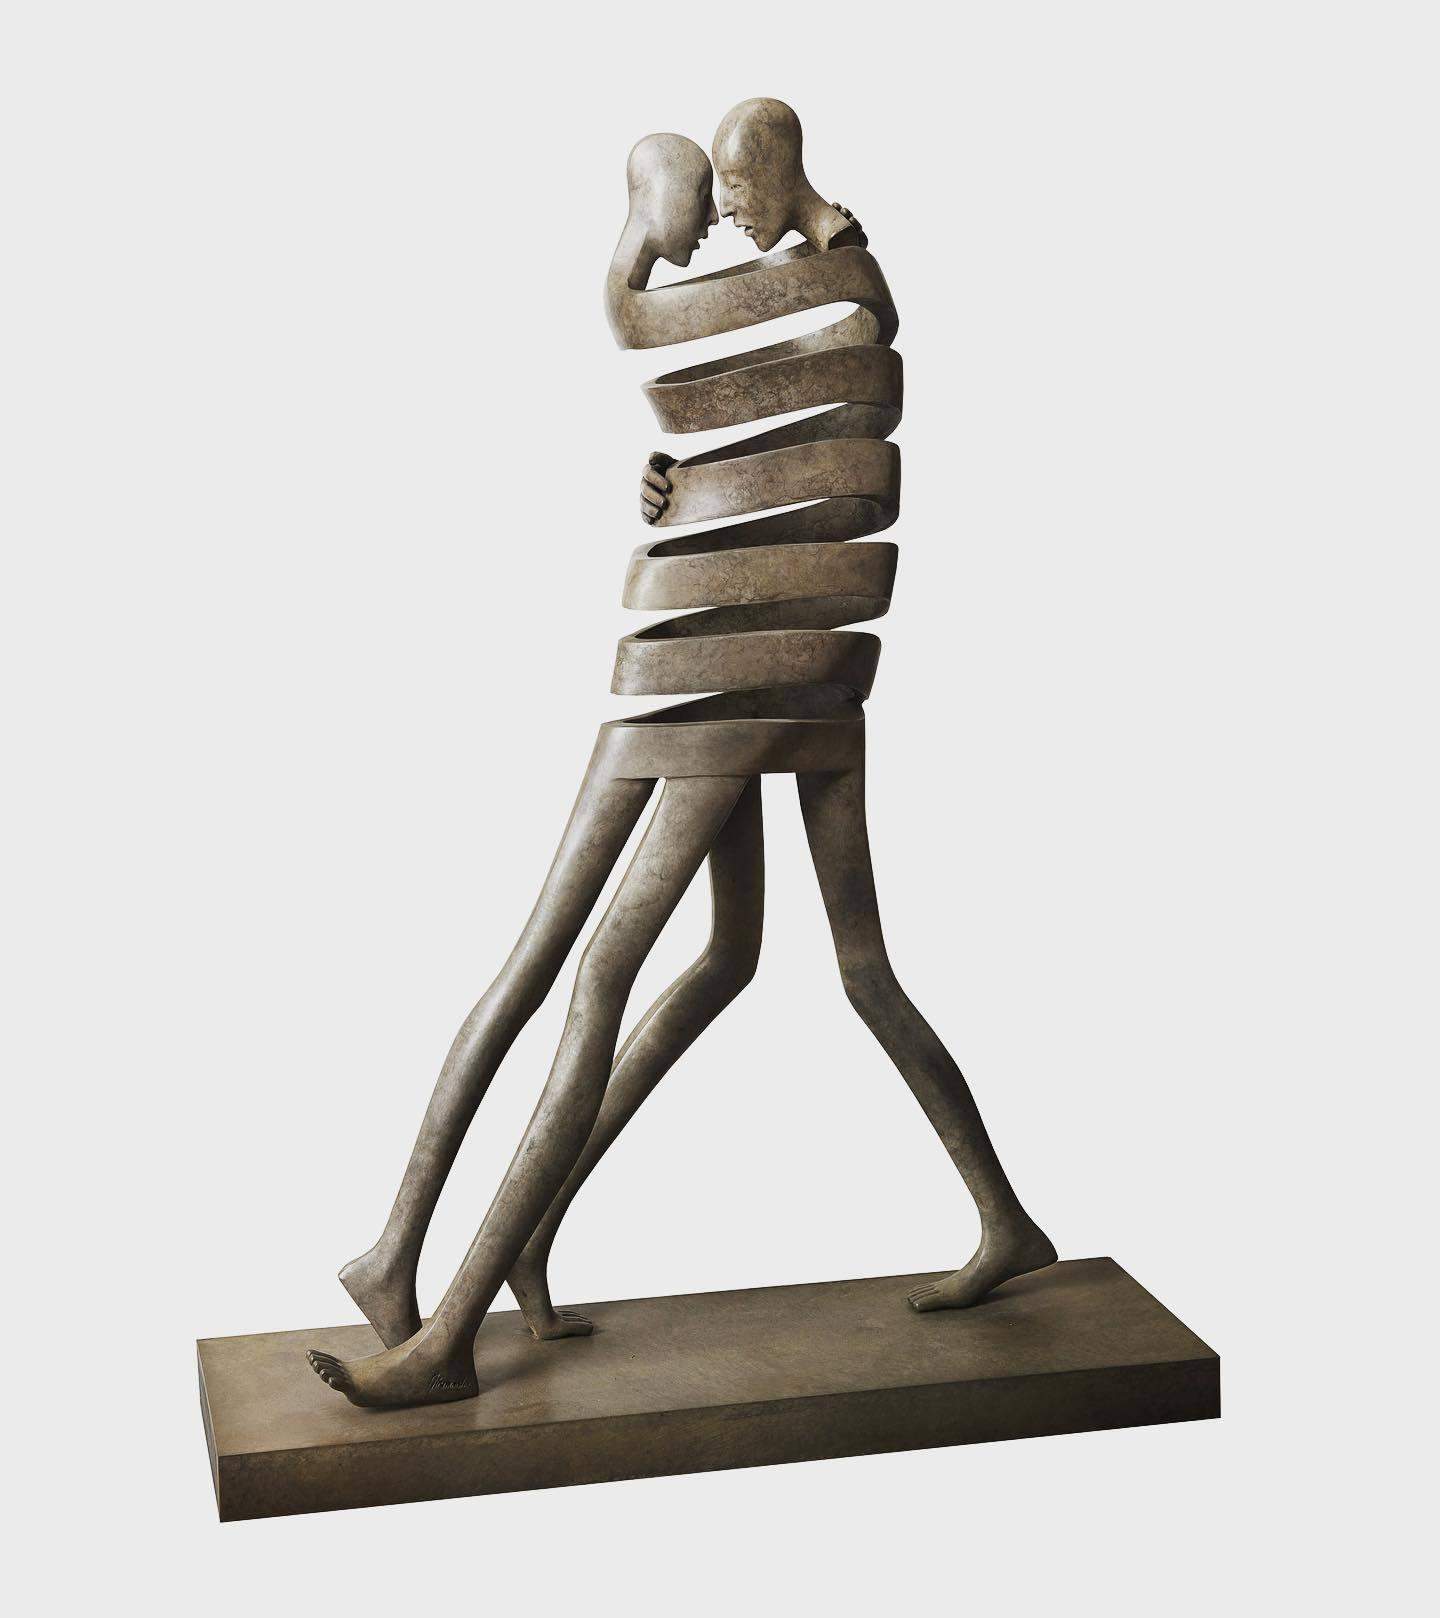 Escultor crea esculturas de bronce dinámicas: fotos de figuras asombrosas